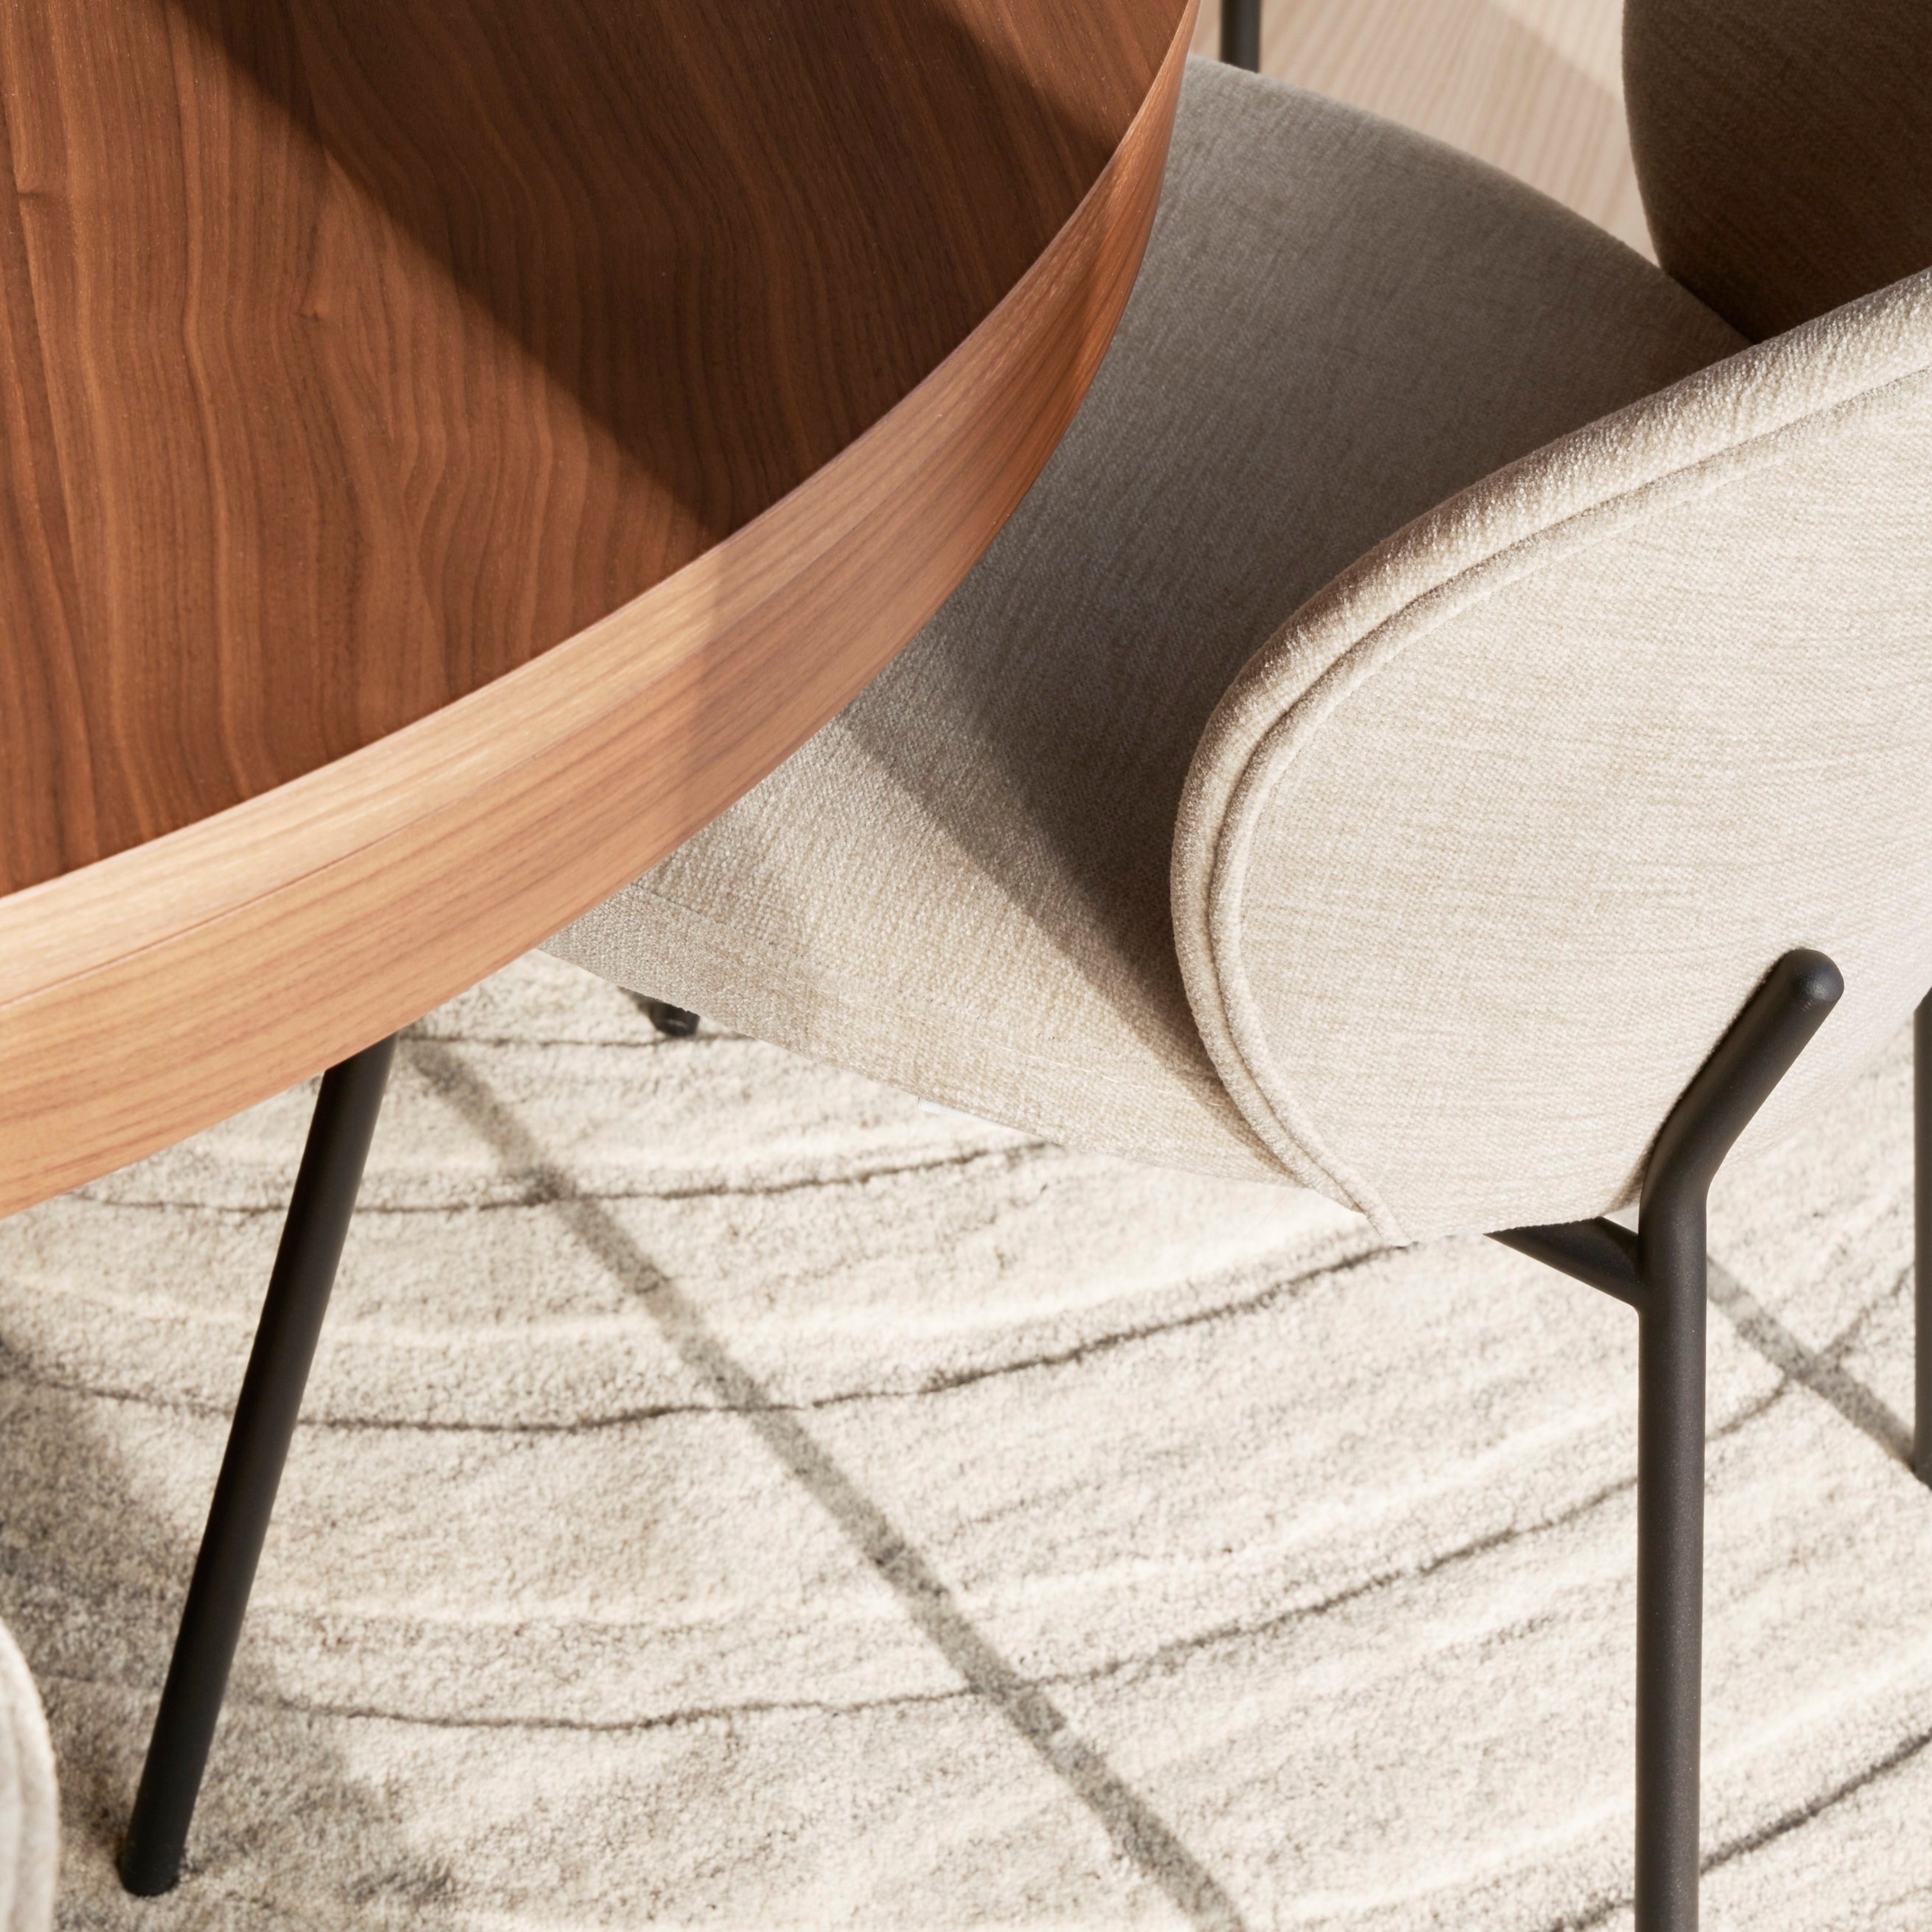 Nærbillede af Princeton stol i beige stof og rundt træbord på mønstret tæppe.